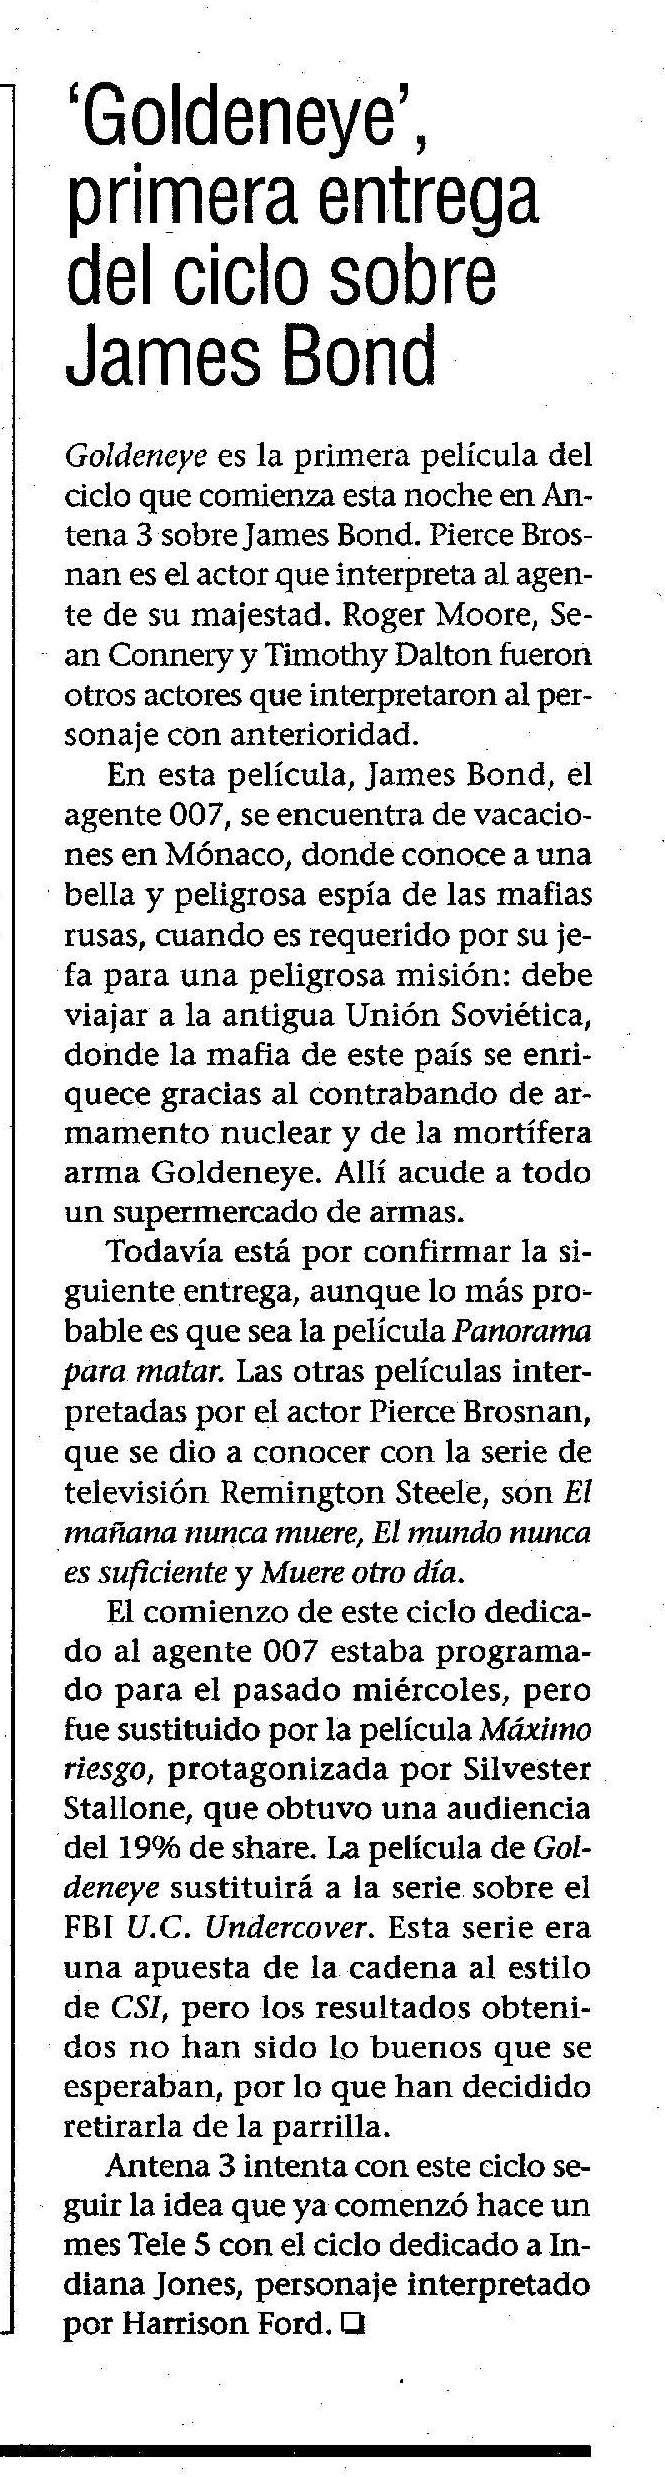 17 2003 07 14 Lanza Ciudad Real 41 Antena3